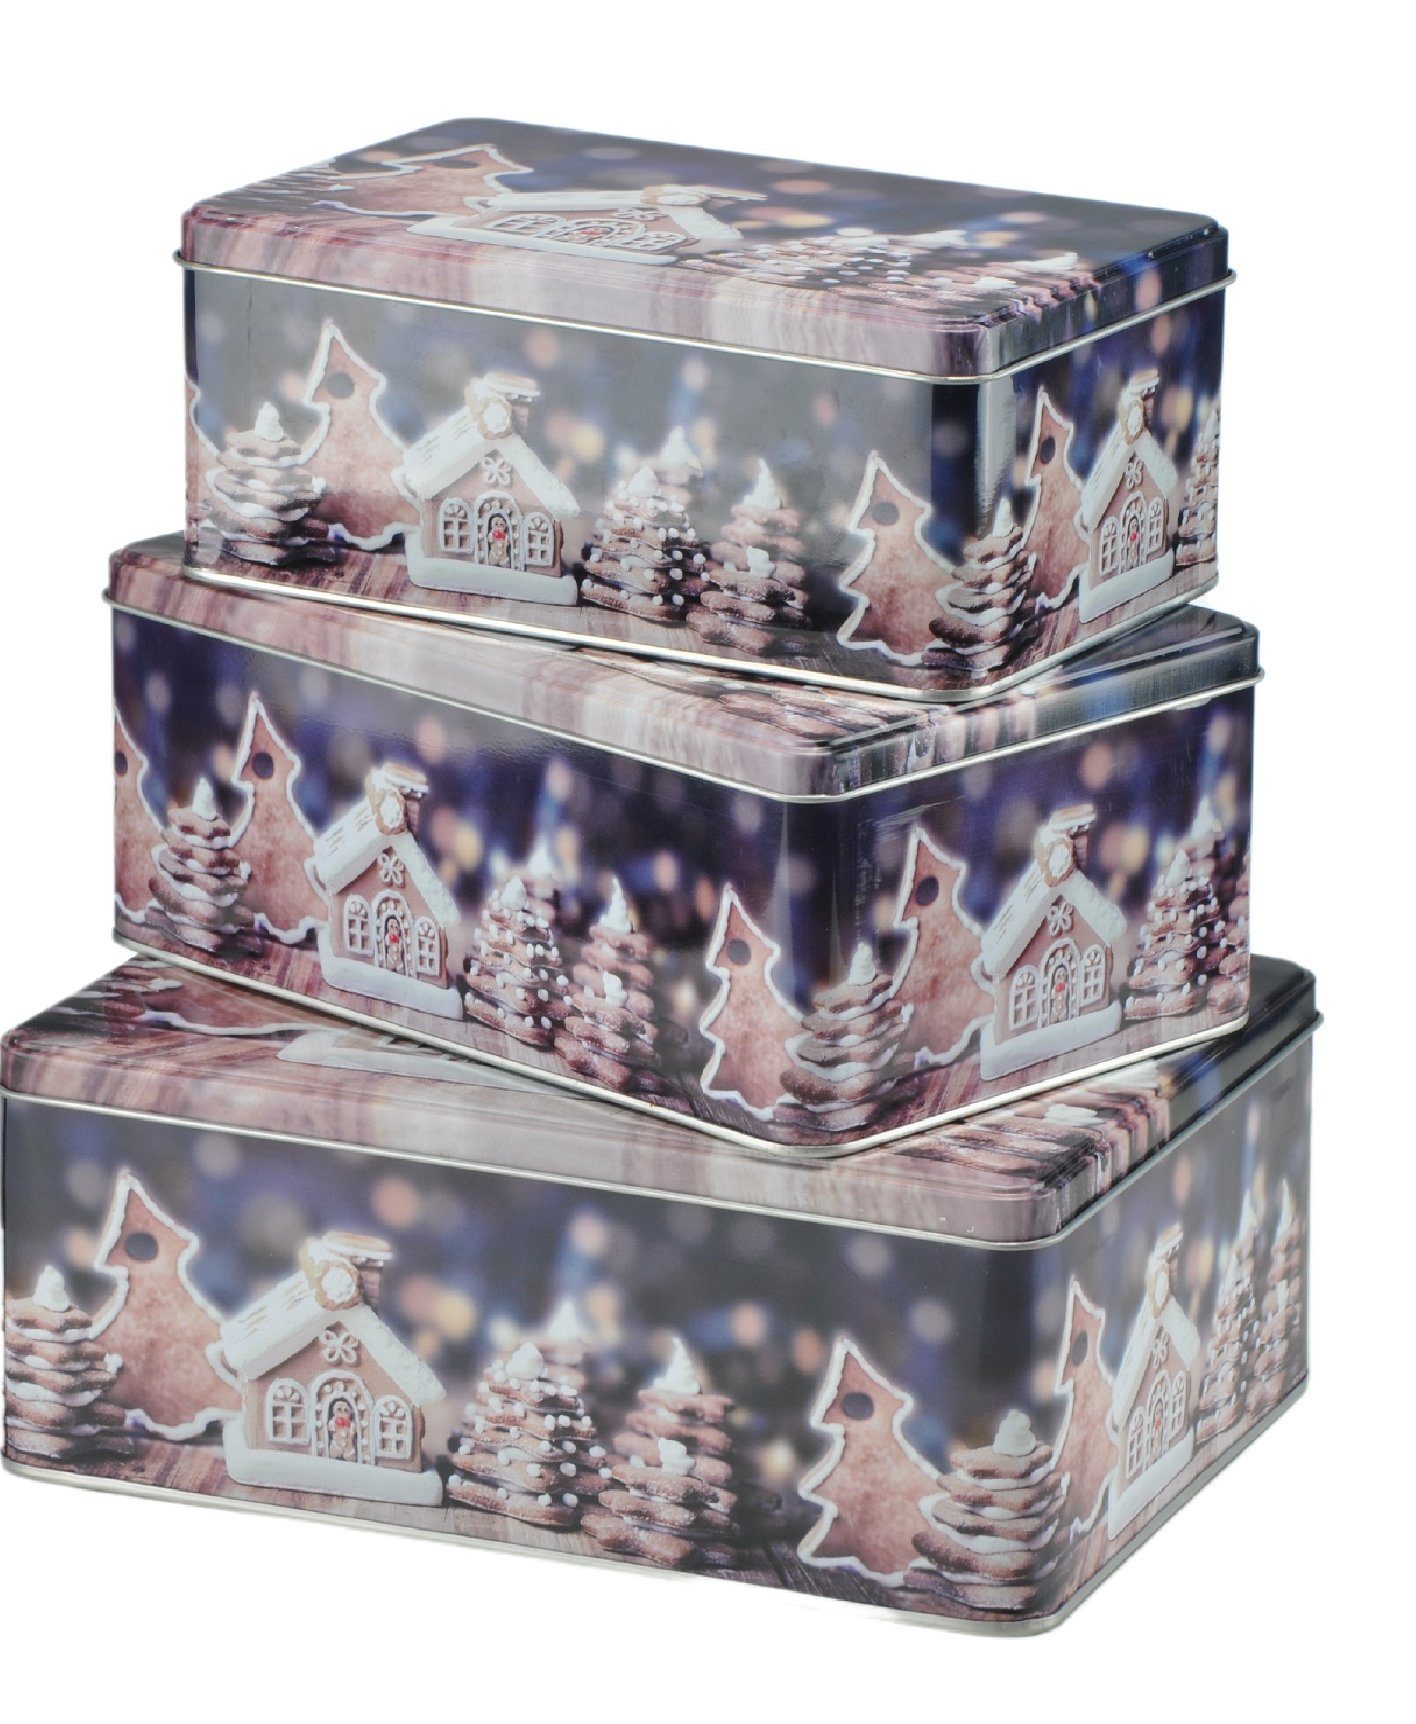 Rungassi Keksdose Weihnachts-Keksdosen Plätzchendosen Dosen 3er Set rechteckig Farbe: Dunklblau